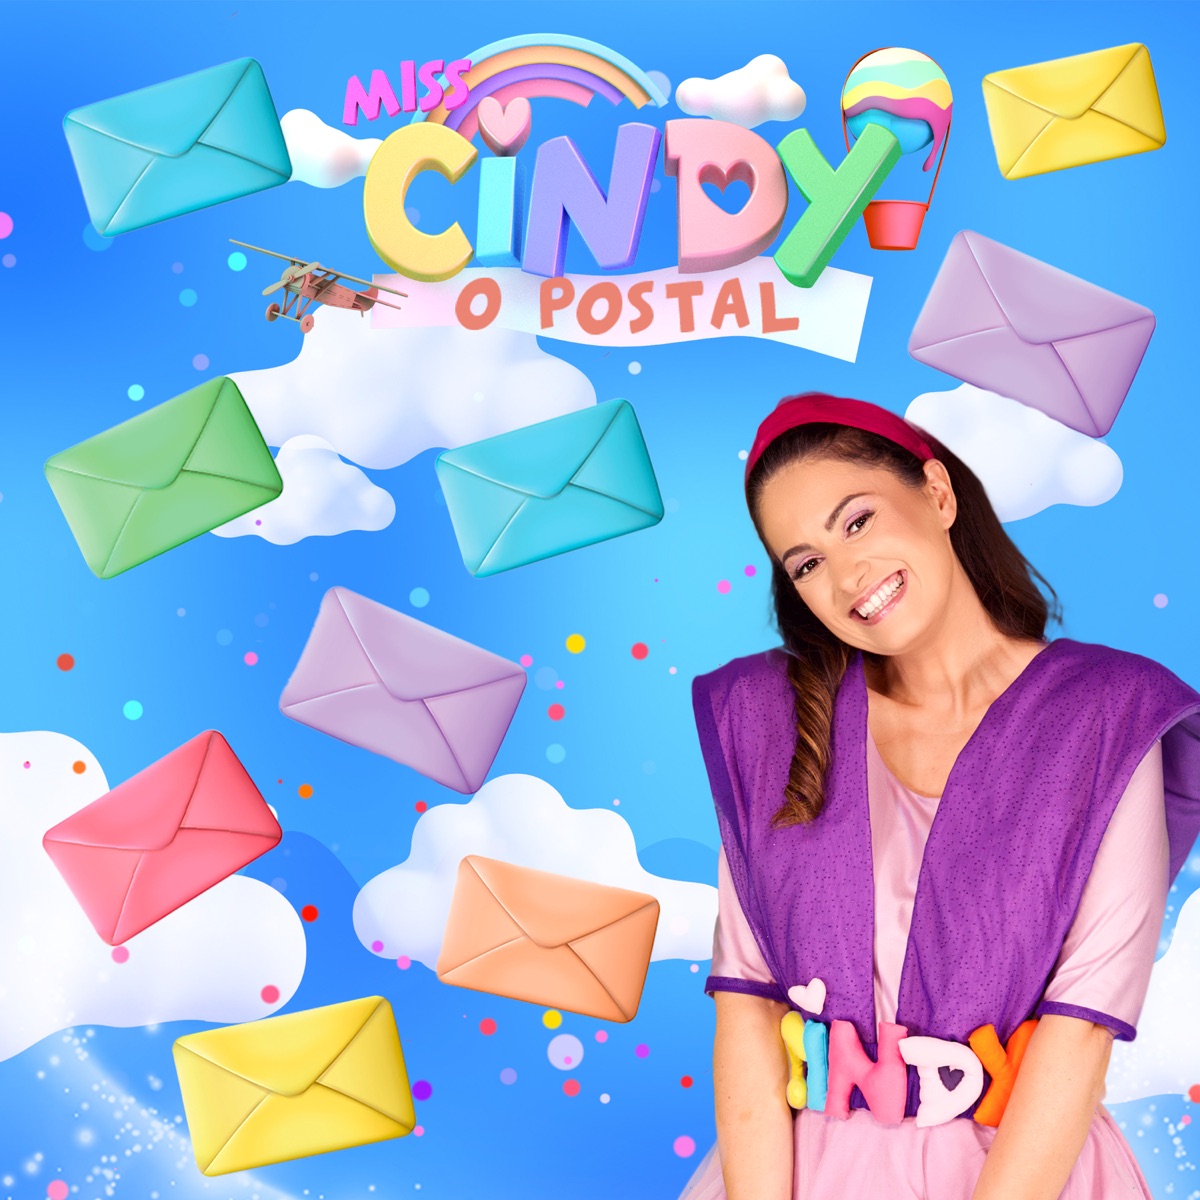 “O postal” é a nova música de Miss Cindy